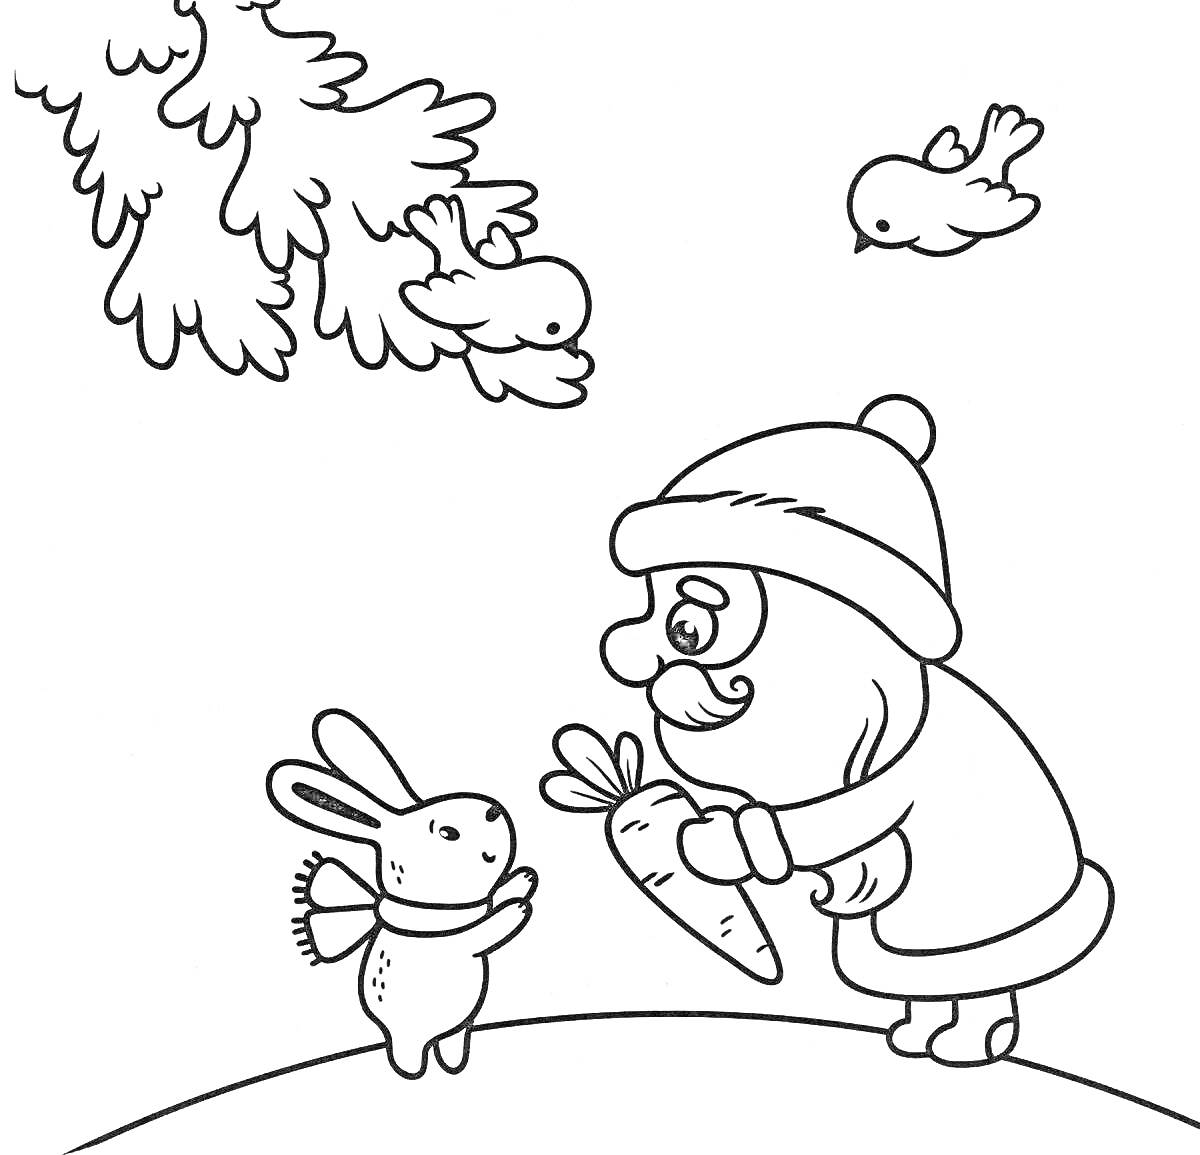 Раскраска Дед Мороз дарит морковку новогоднему кролику, птицы на ели